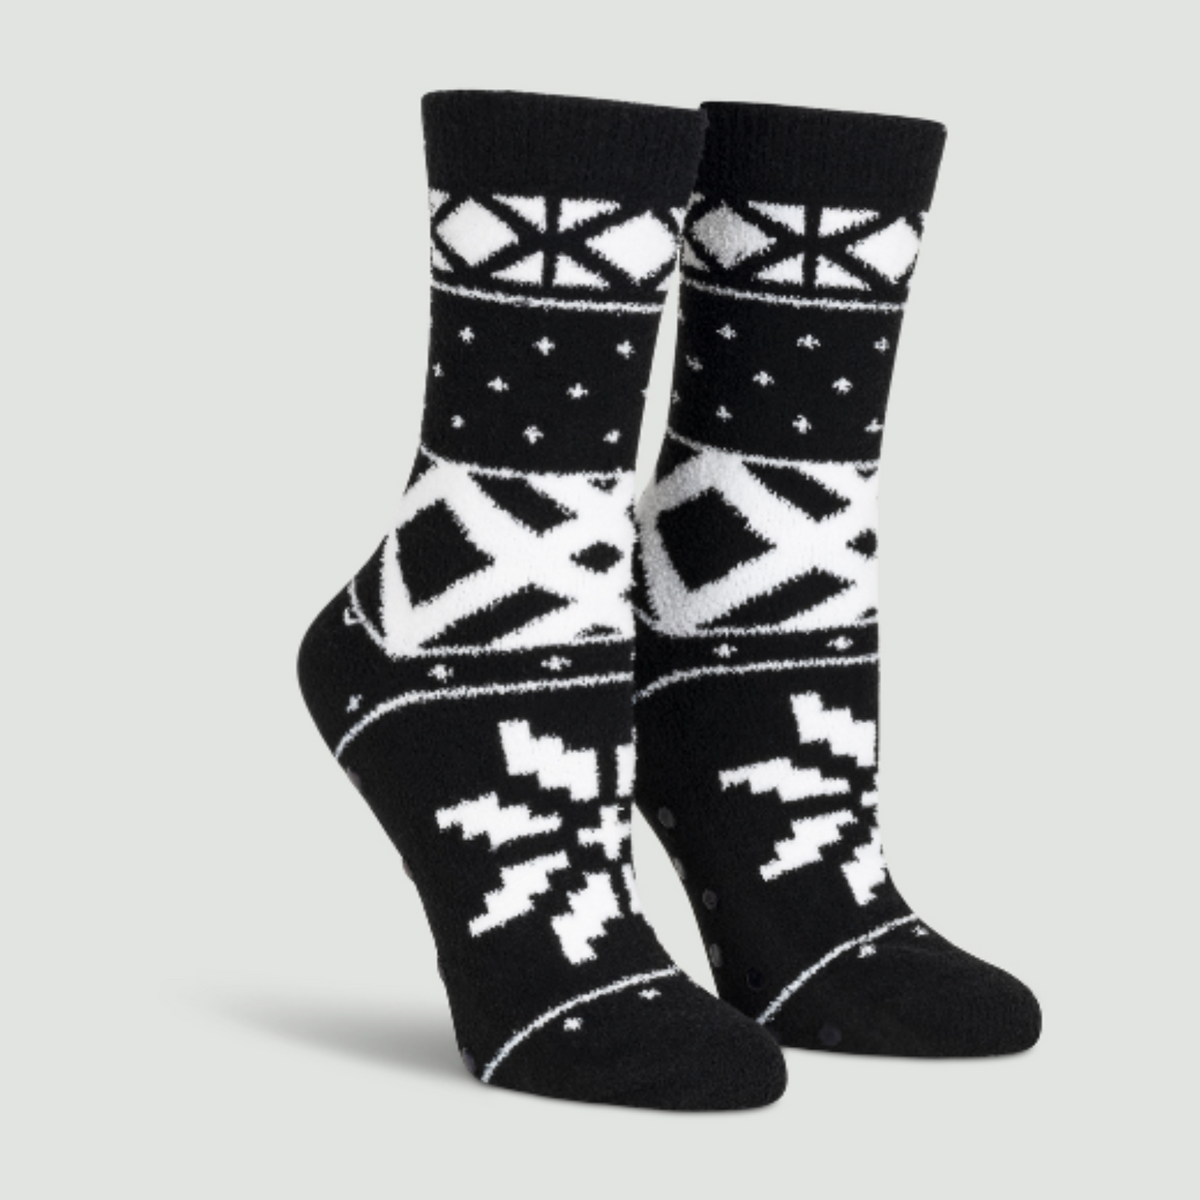 Sock It To Me You Sweater Believe It women&#39;s slipper sock featuring black fair isle pattern. Socks shown on display feet.